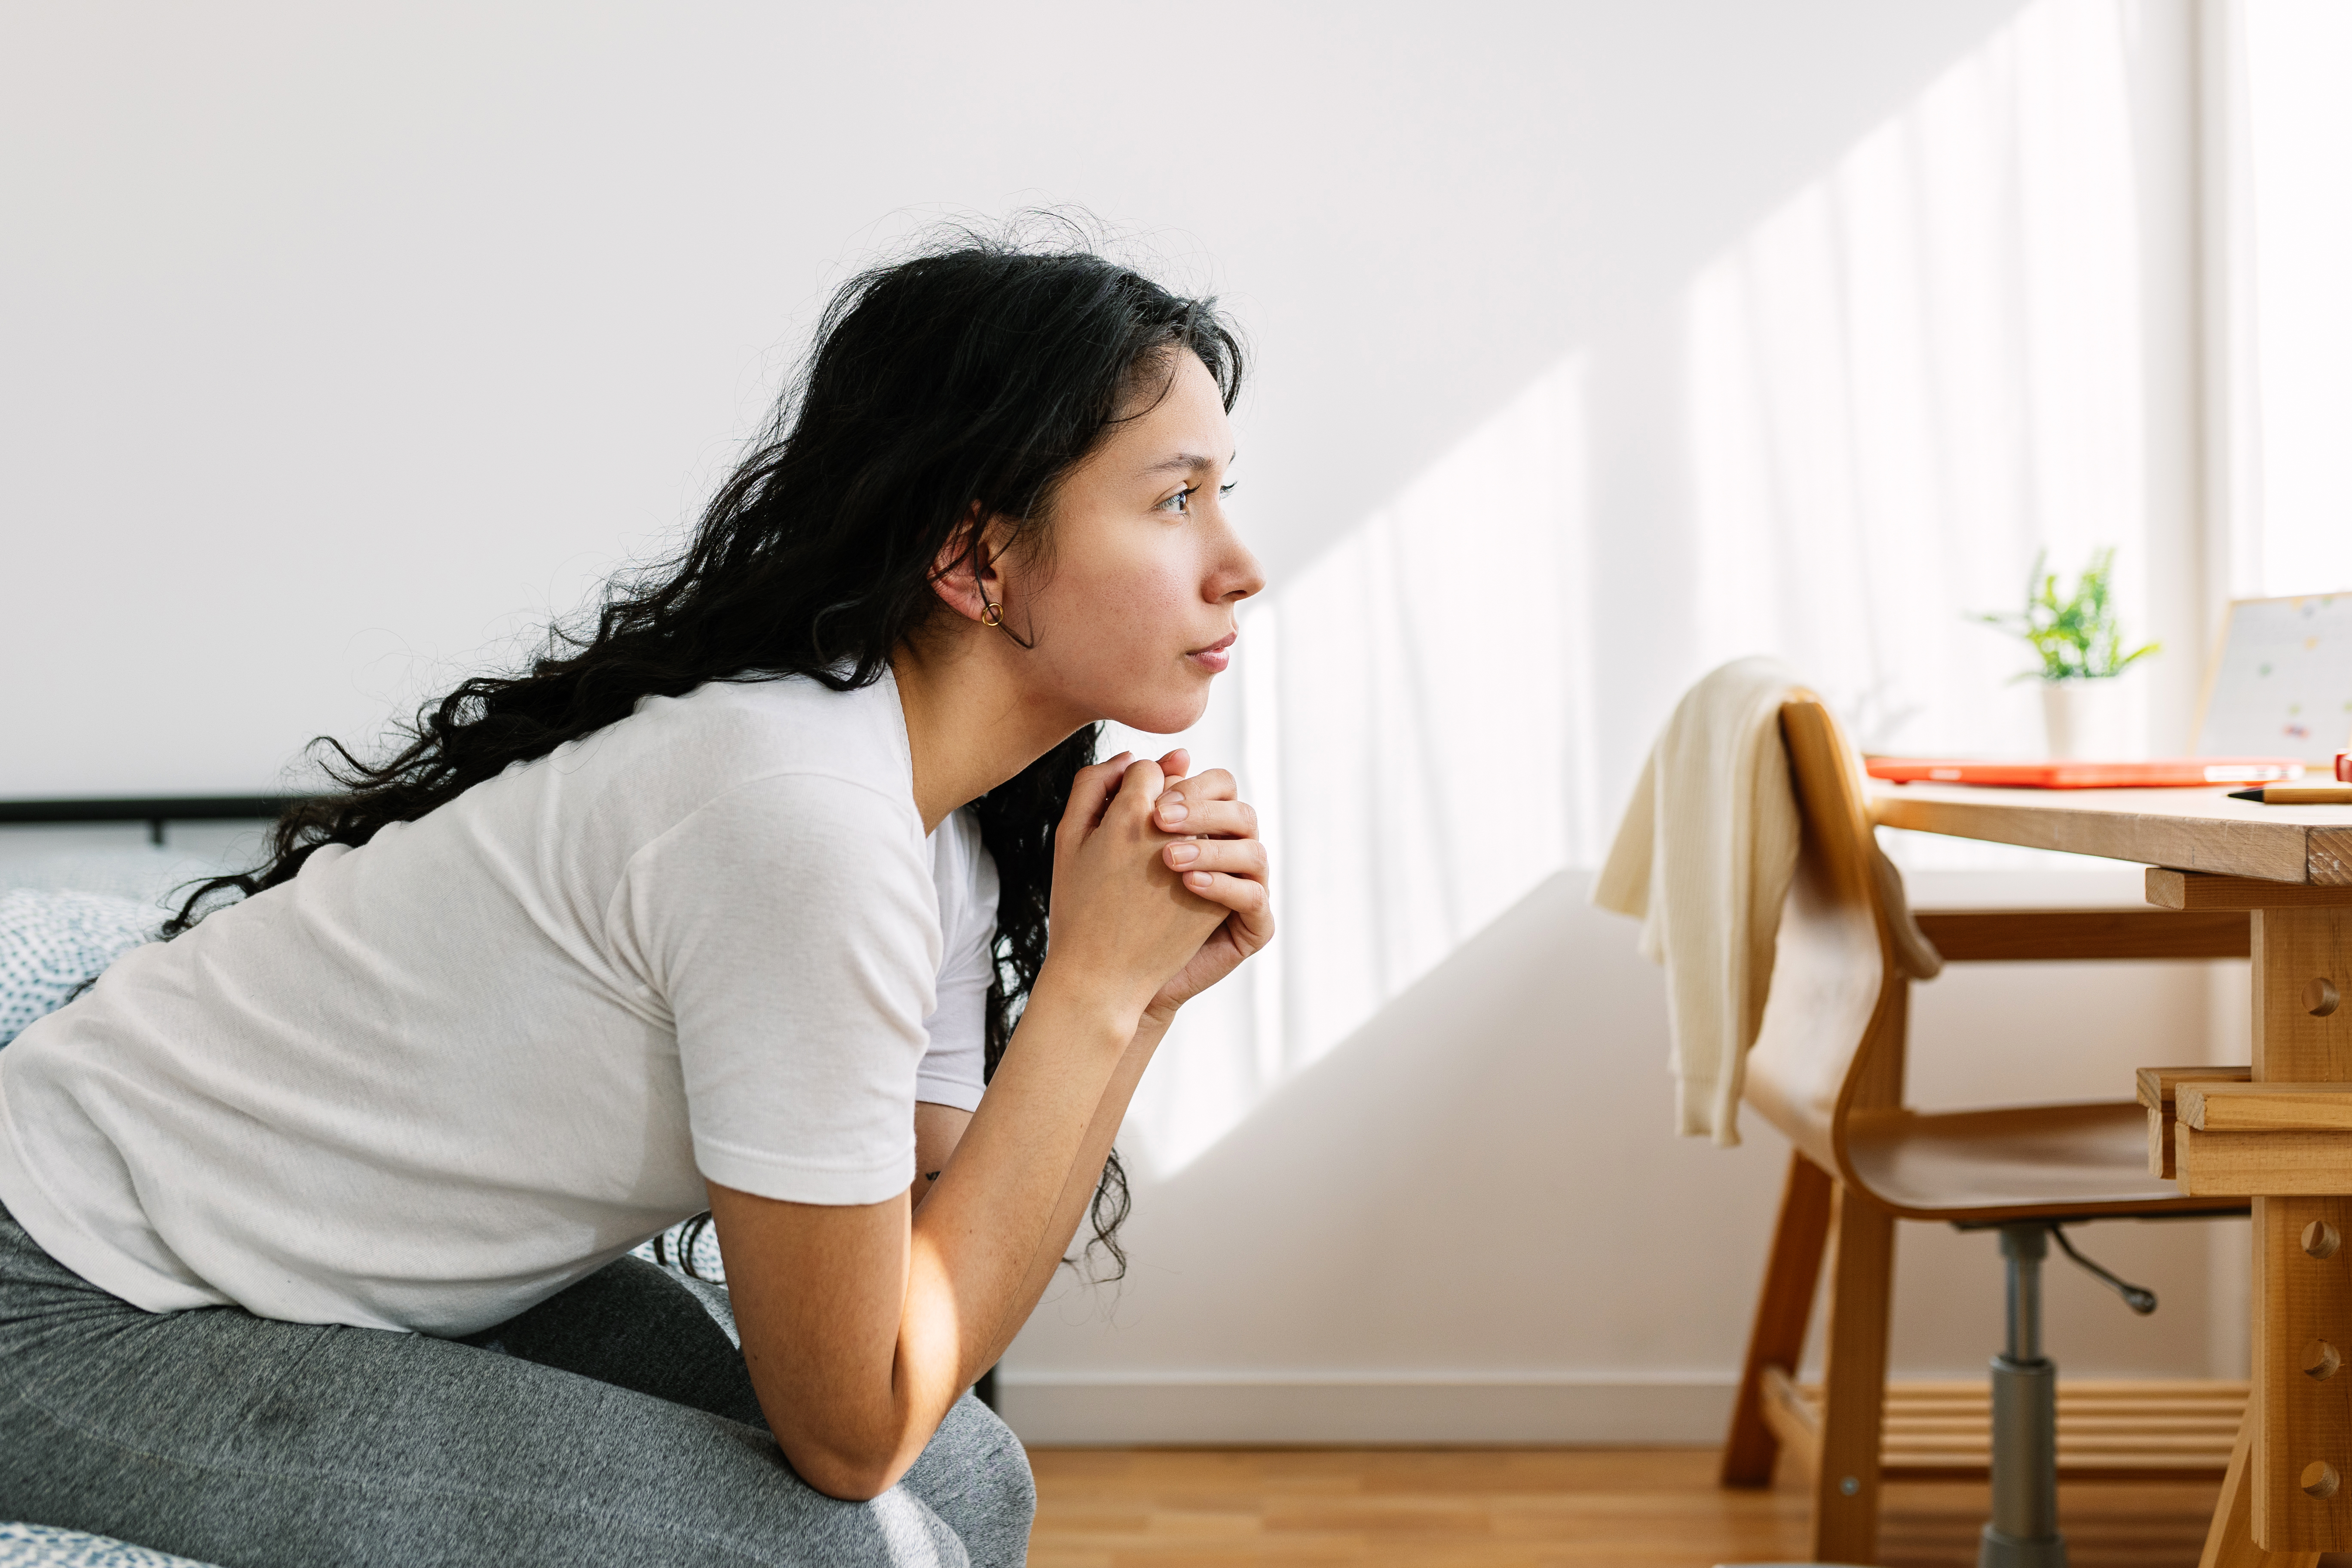 Triste et solitaire adolescente pensive regardant au loin assis sur le lit dans la chambre. Problème social et concept d'intimidation à l'adolescence | Source : Getty Images